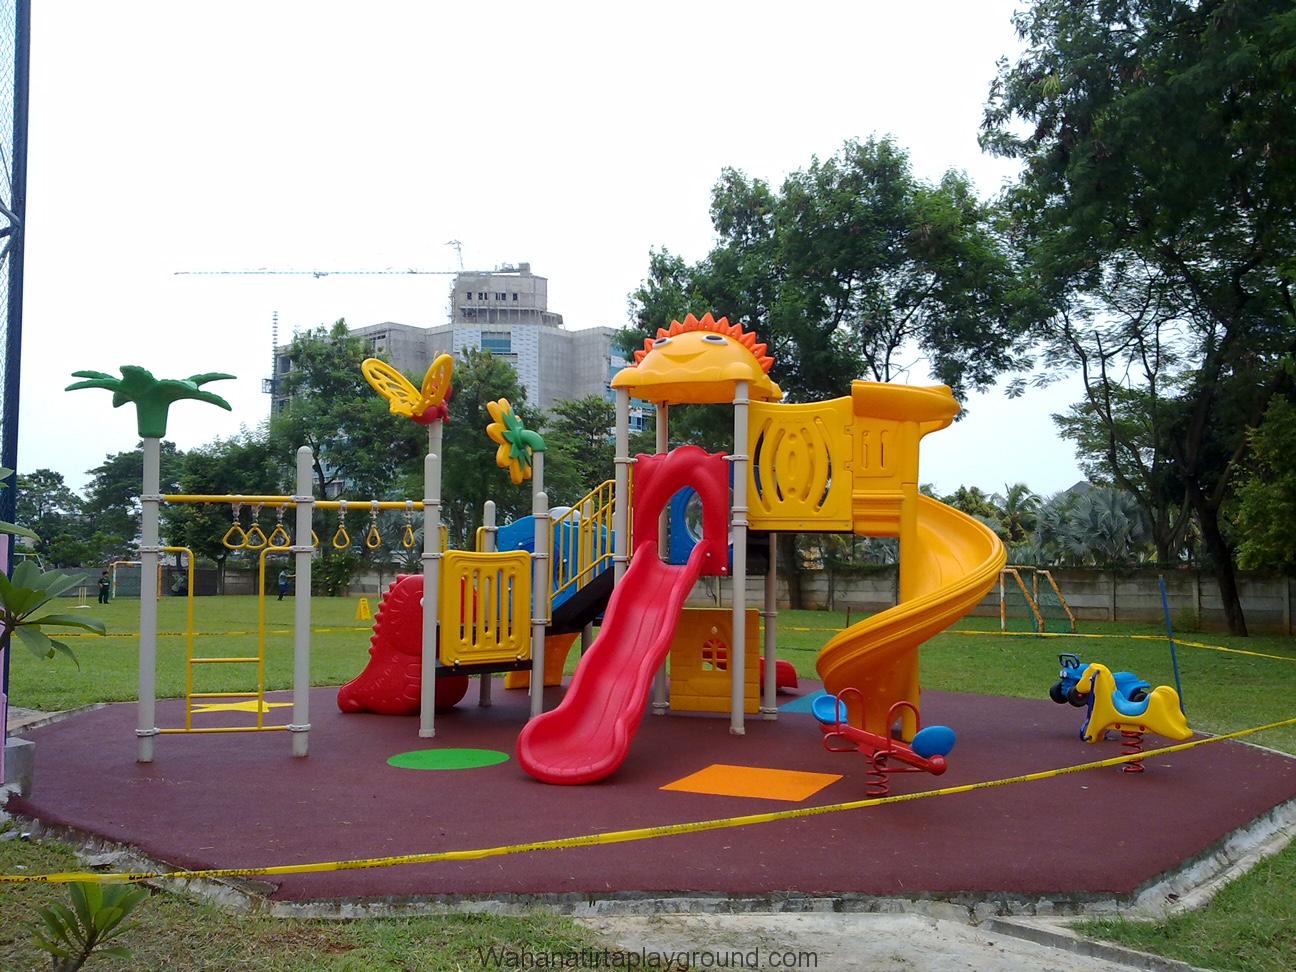 Harga Playground Outdoor Terjangkau Dari Wahana Tirta Playground